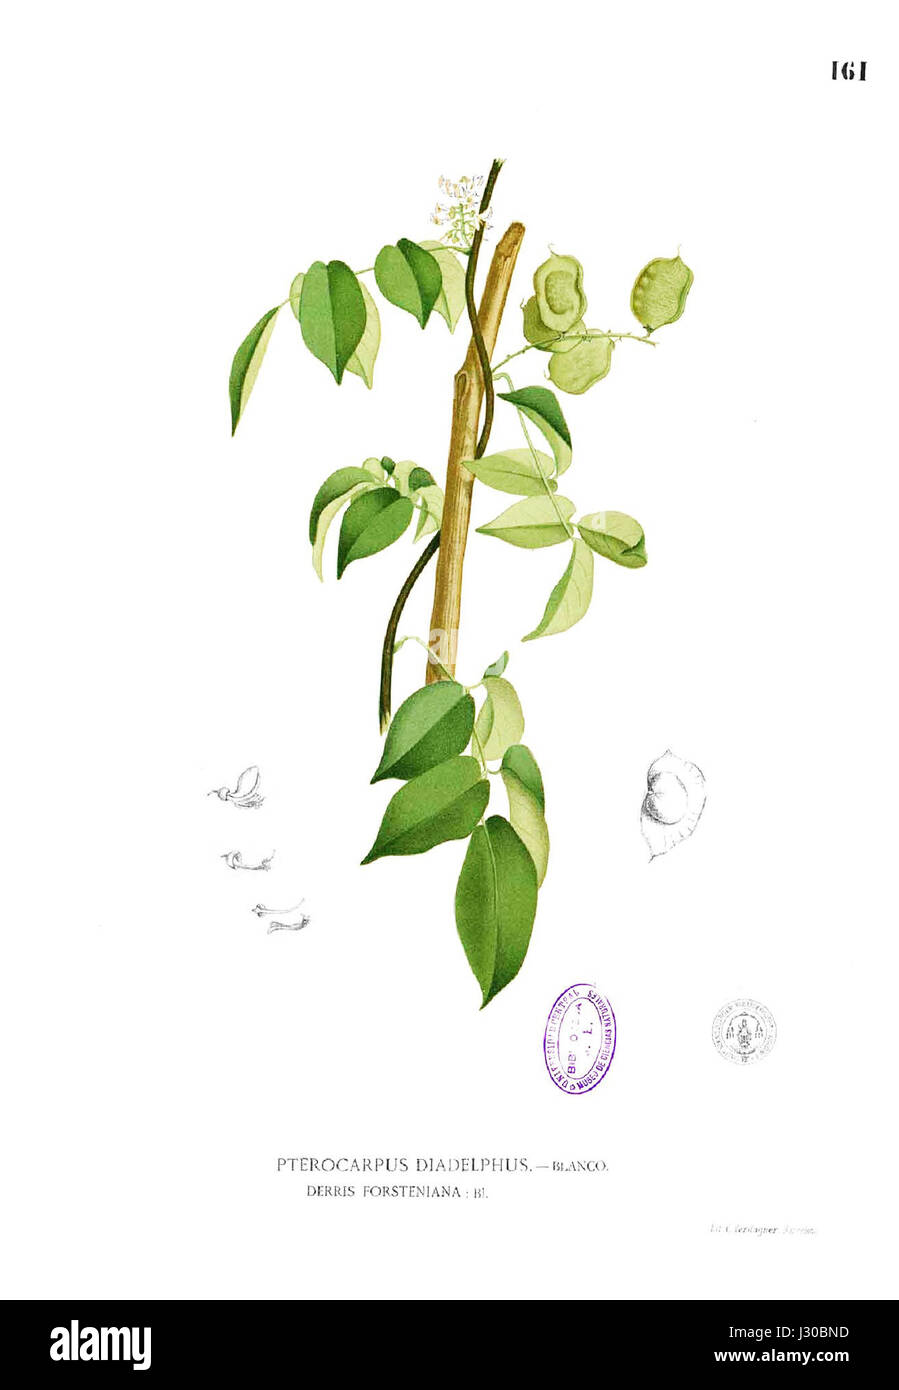 Aganope thyrsiflora Blanco1.161 Stock Photo